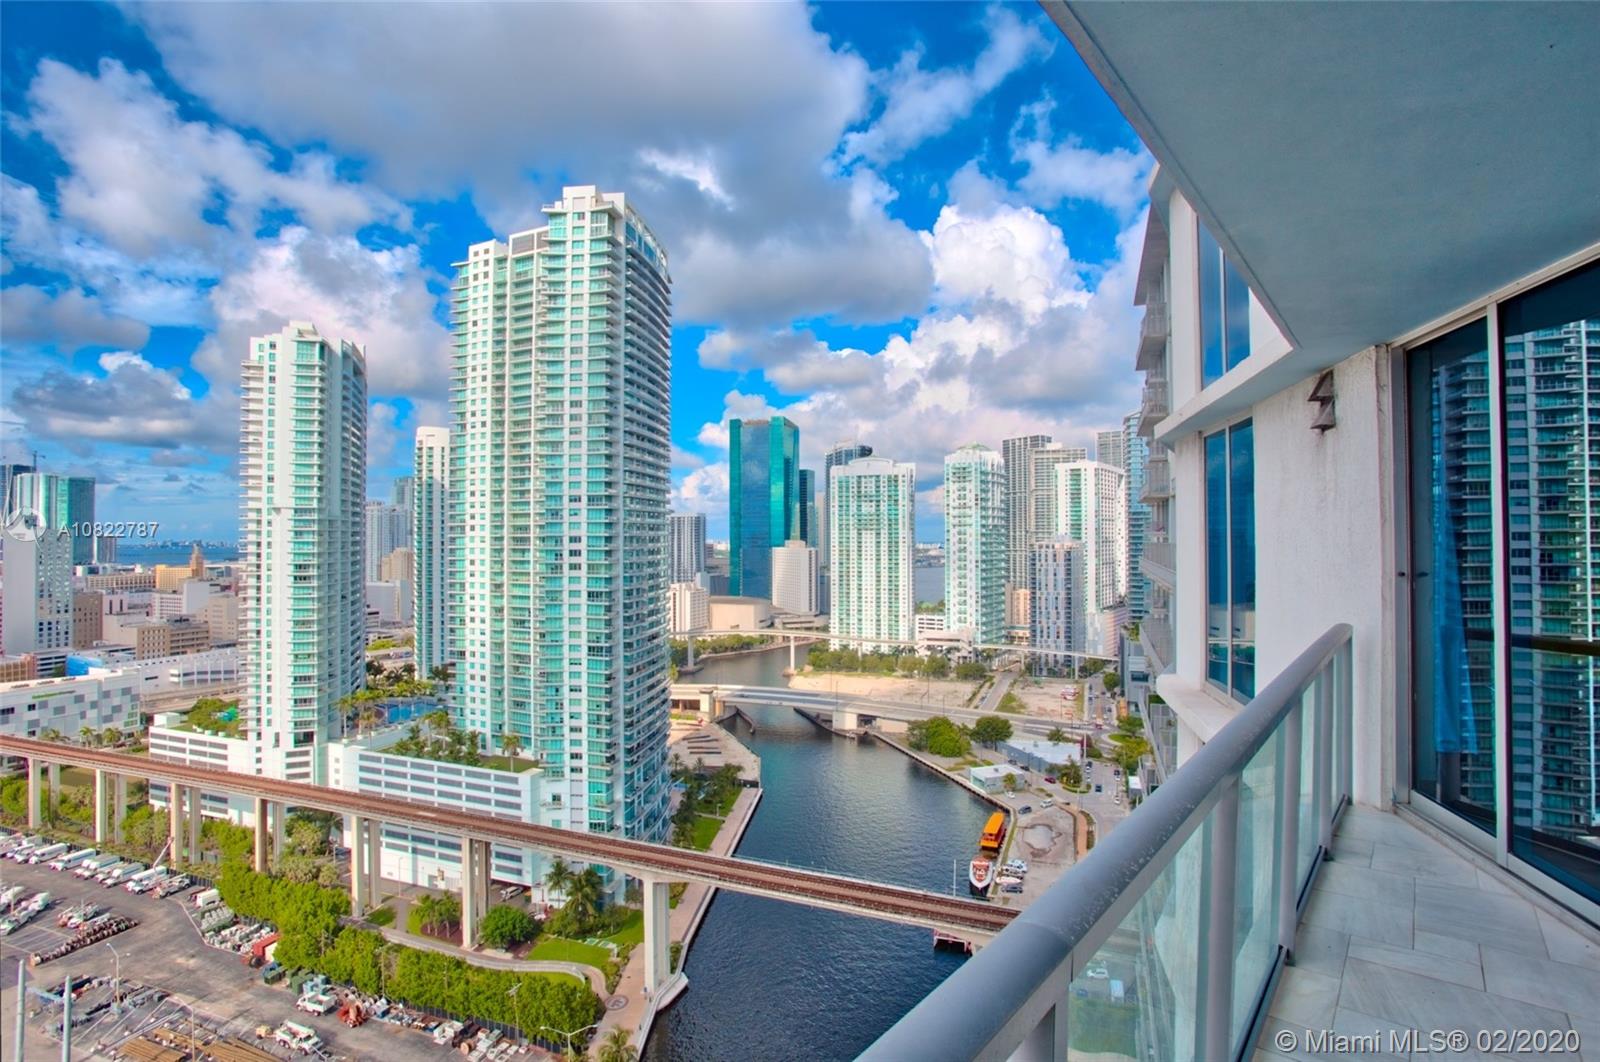 Latitude Unit 2709 Condo for Rent in Brickell Miami Condos